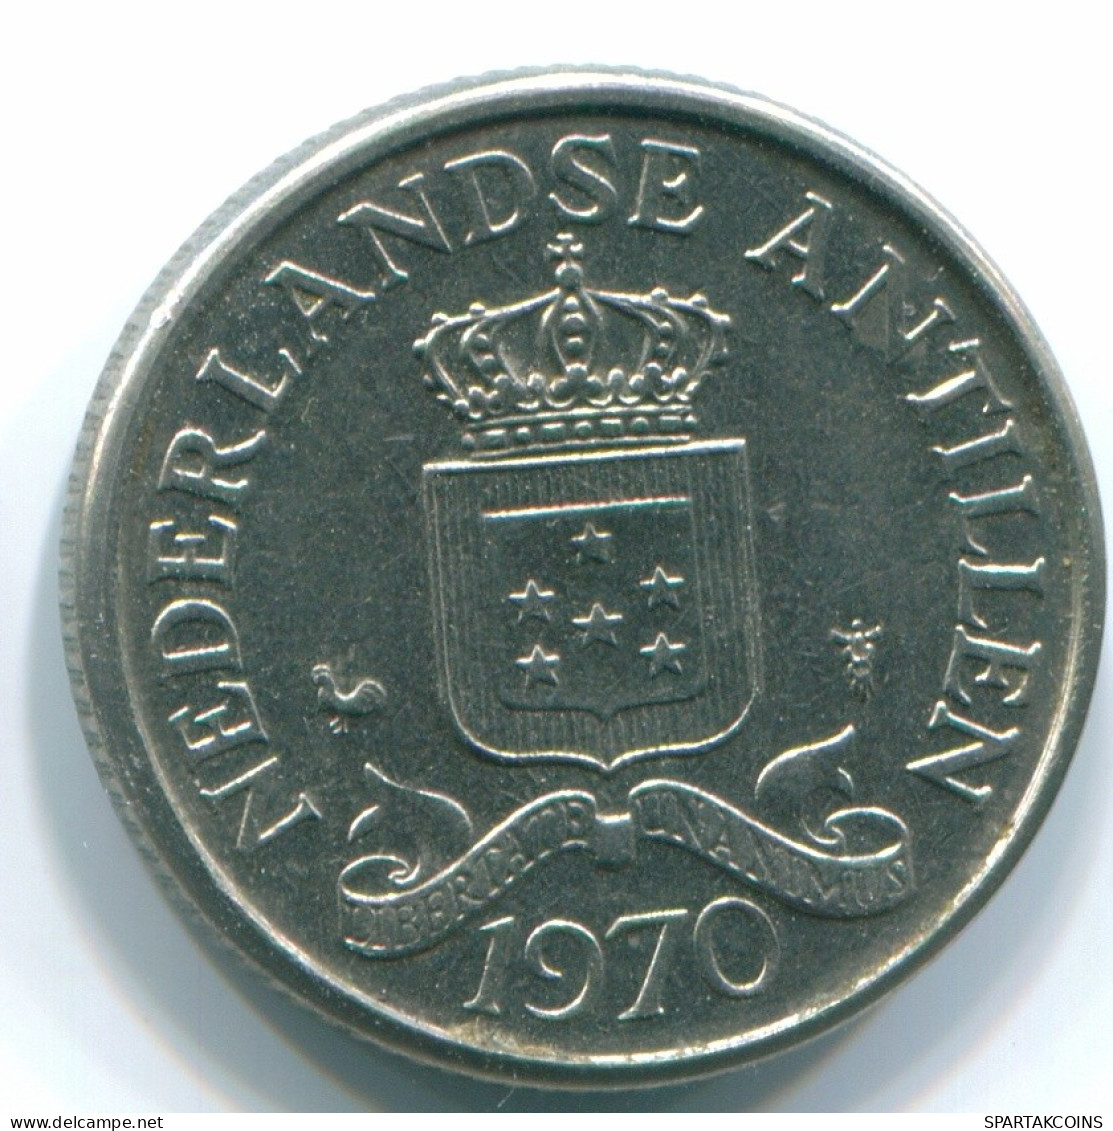 25 CENTS 1970 NIEDERLÄNDISCHE ANTILLEN Nickel Koloniale Münze #S11470.D.A - Antilles Néerlandaises